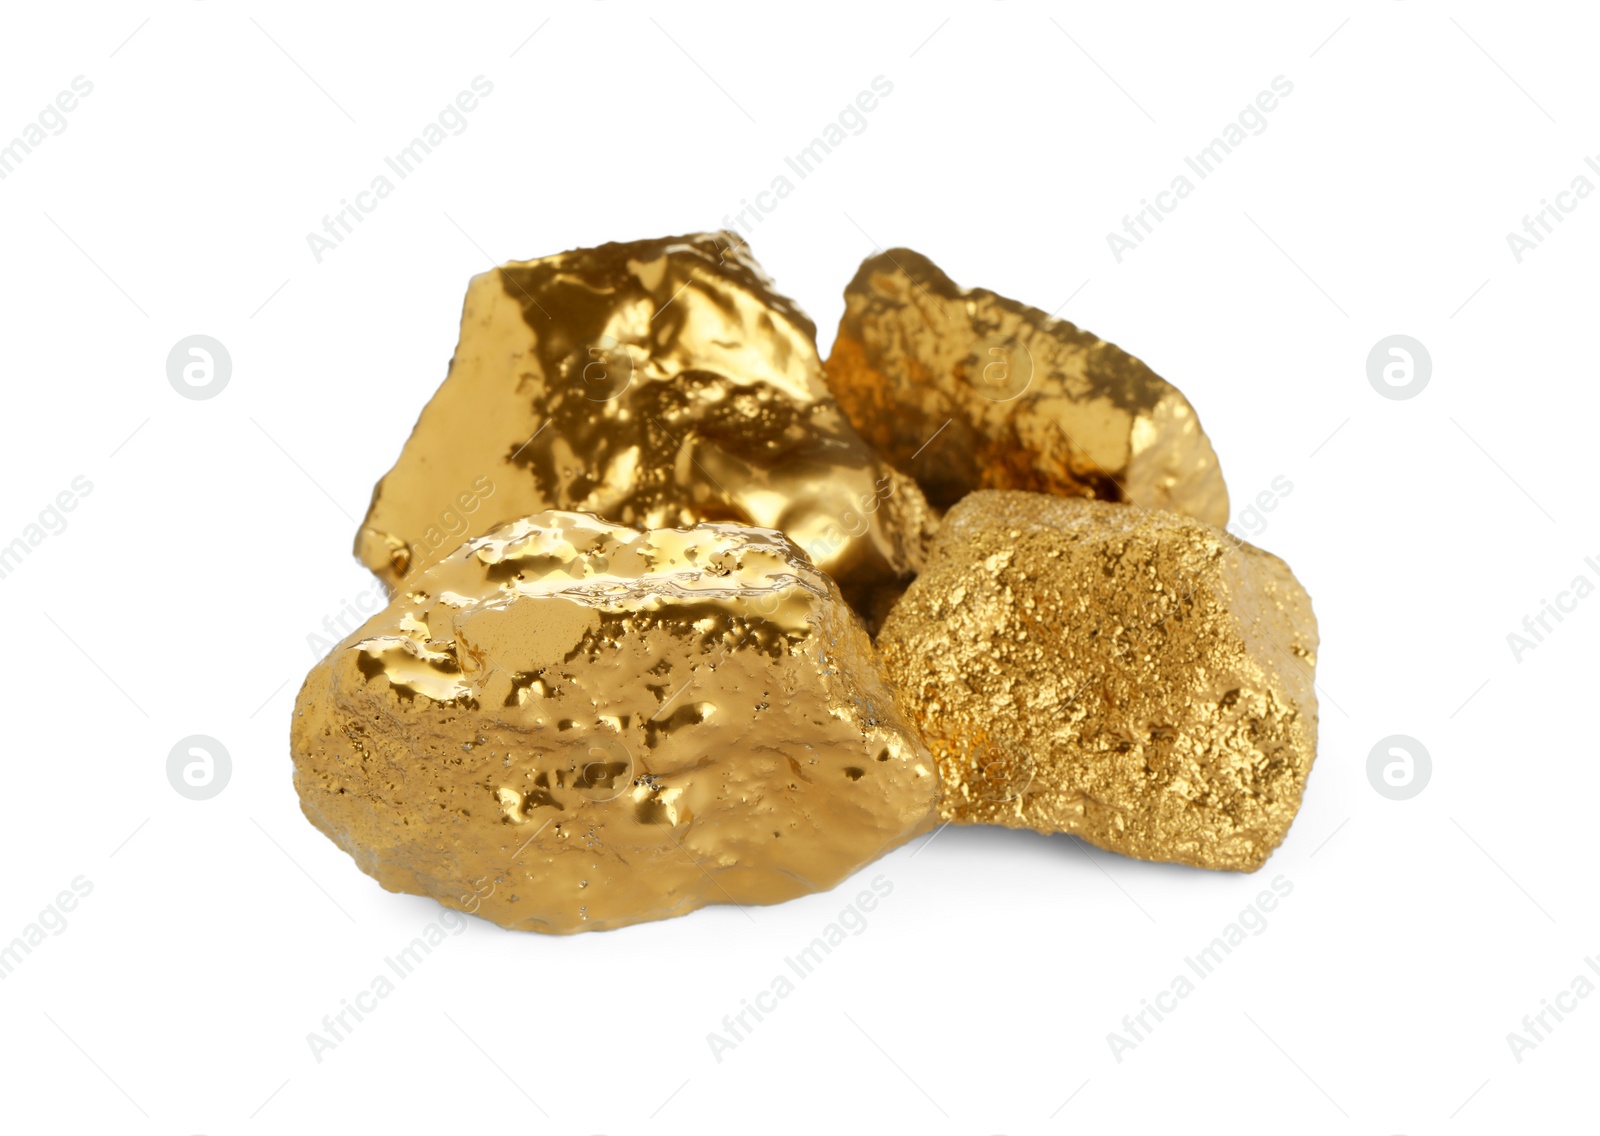 Photo of Many shiny gold nuggets on white background